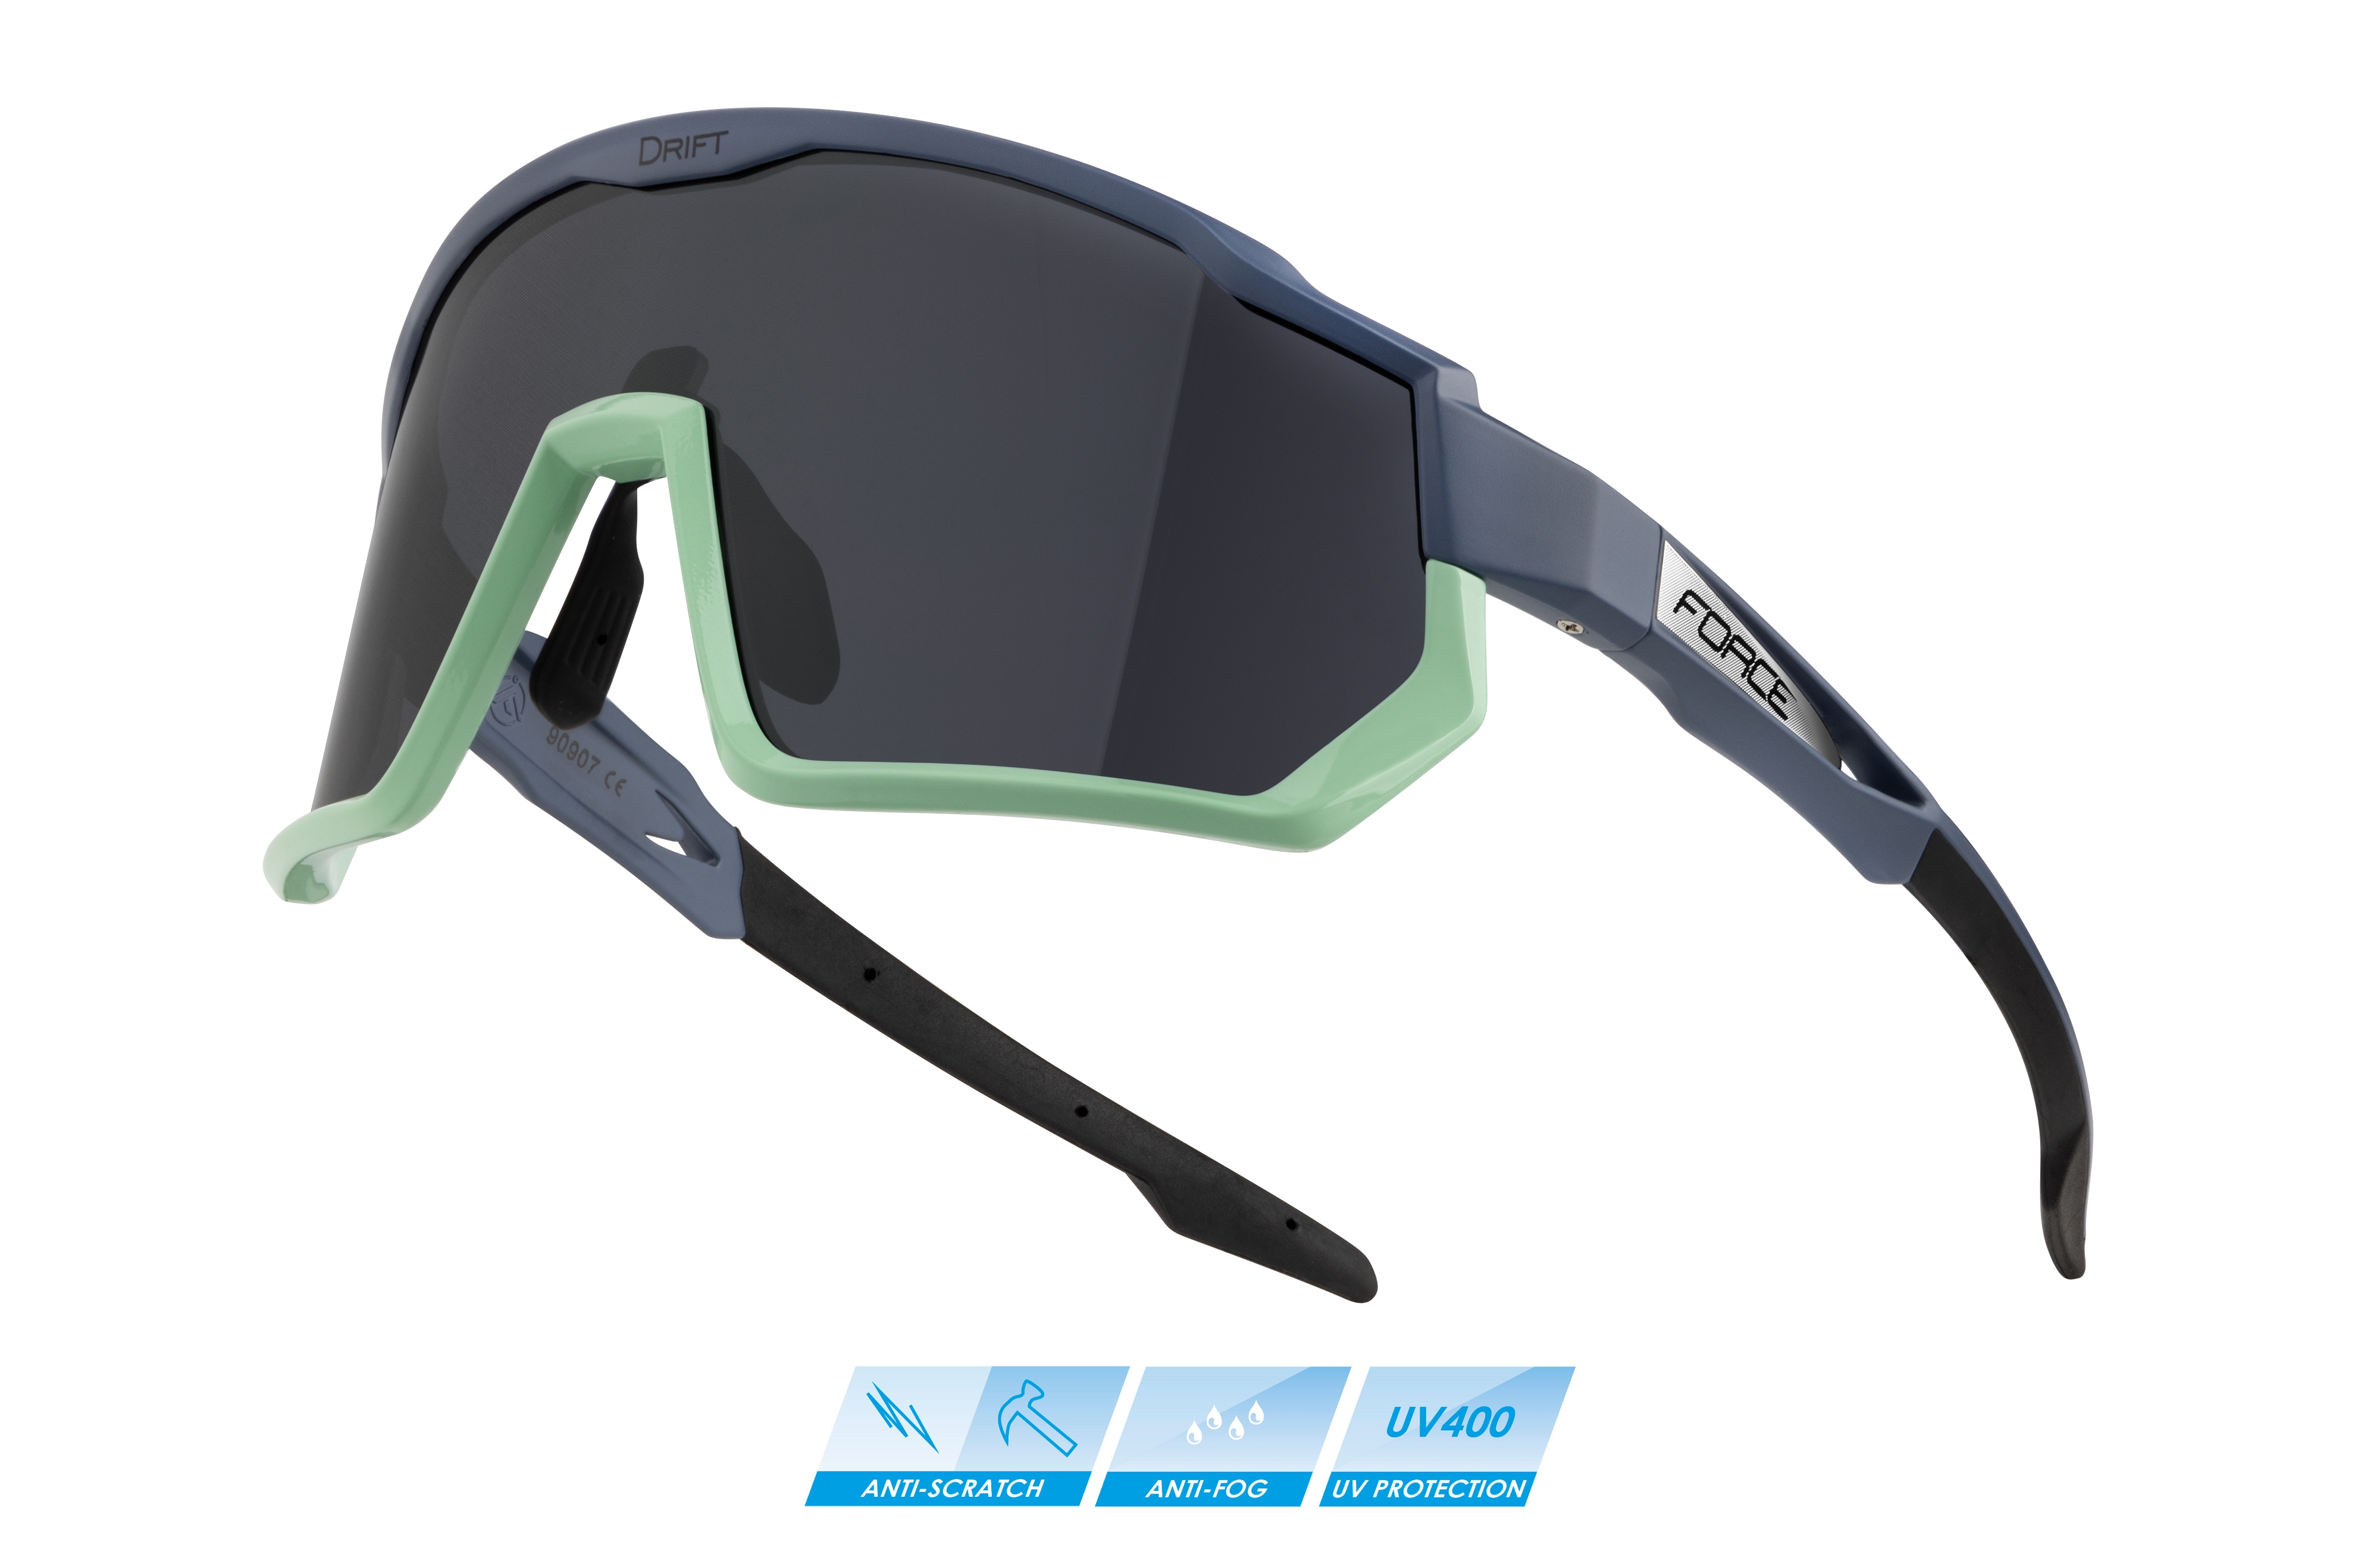 FORCE brýle F DRIFT stormy blue-mint,černé kontrast.sklo varianta: barva: černá, skla: kontrastní, určení: cyklistické, Řada: Black line